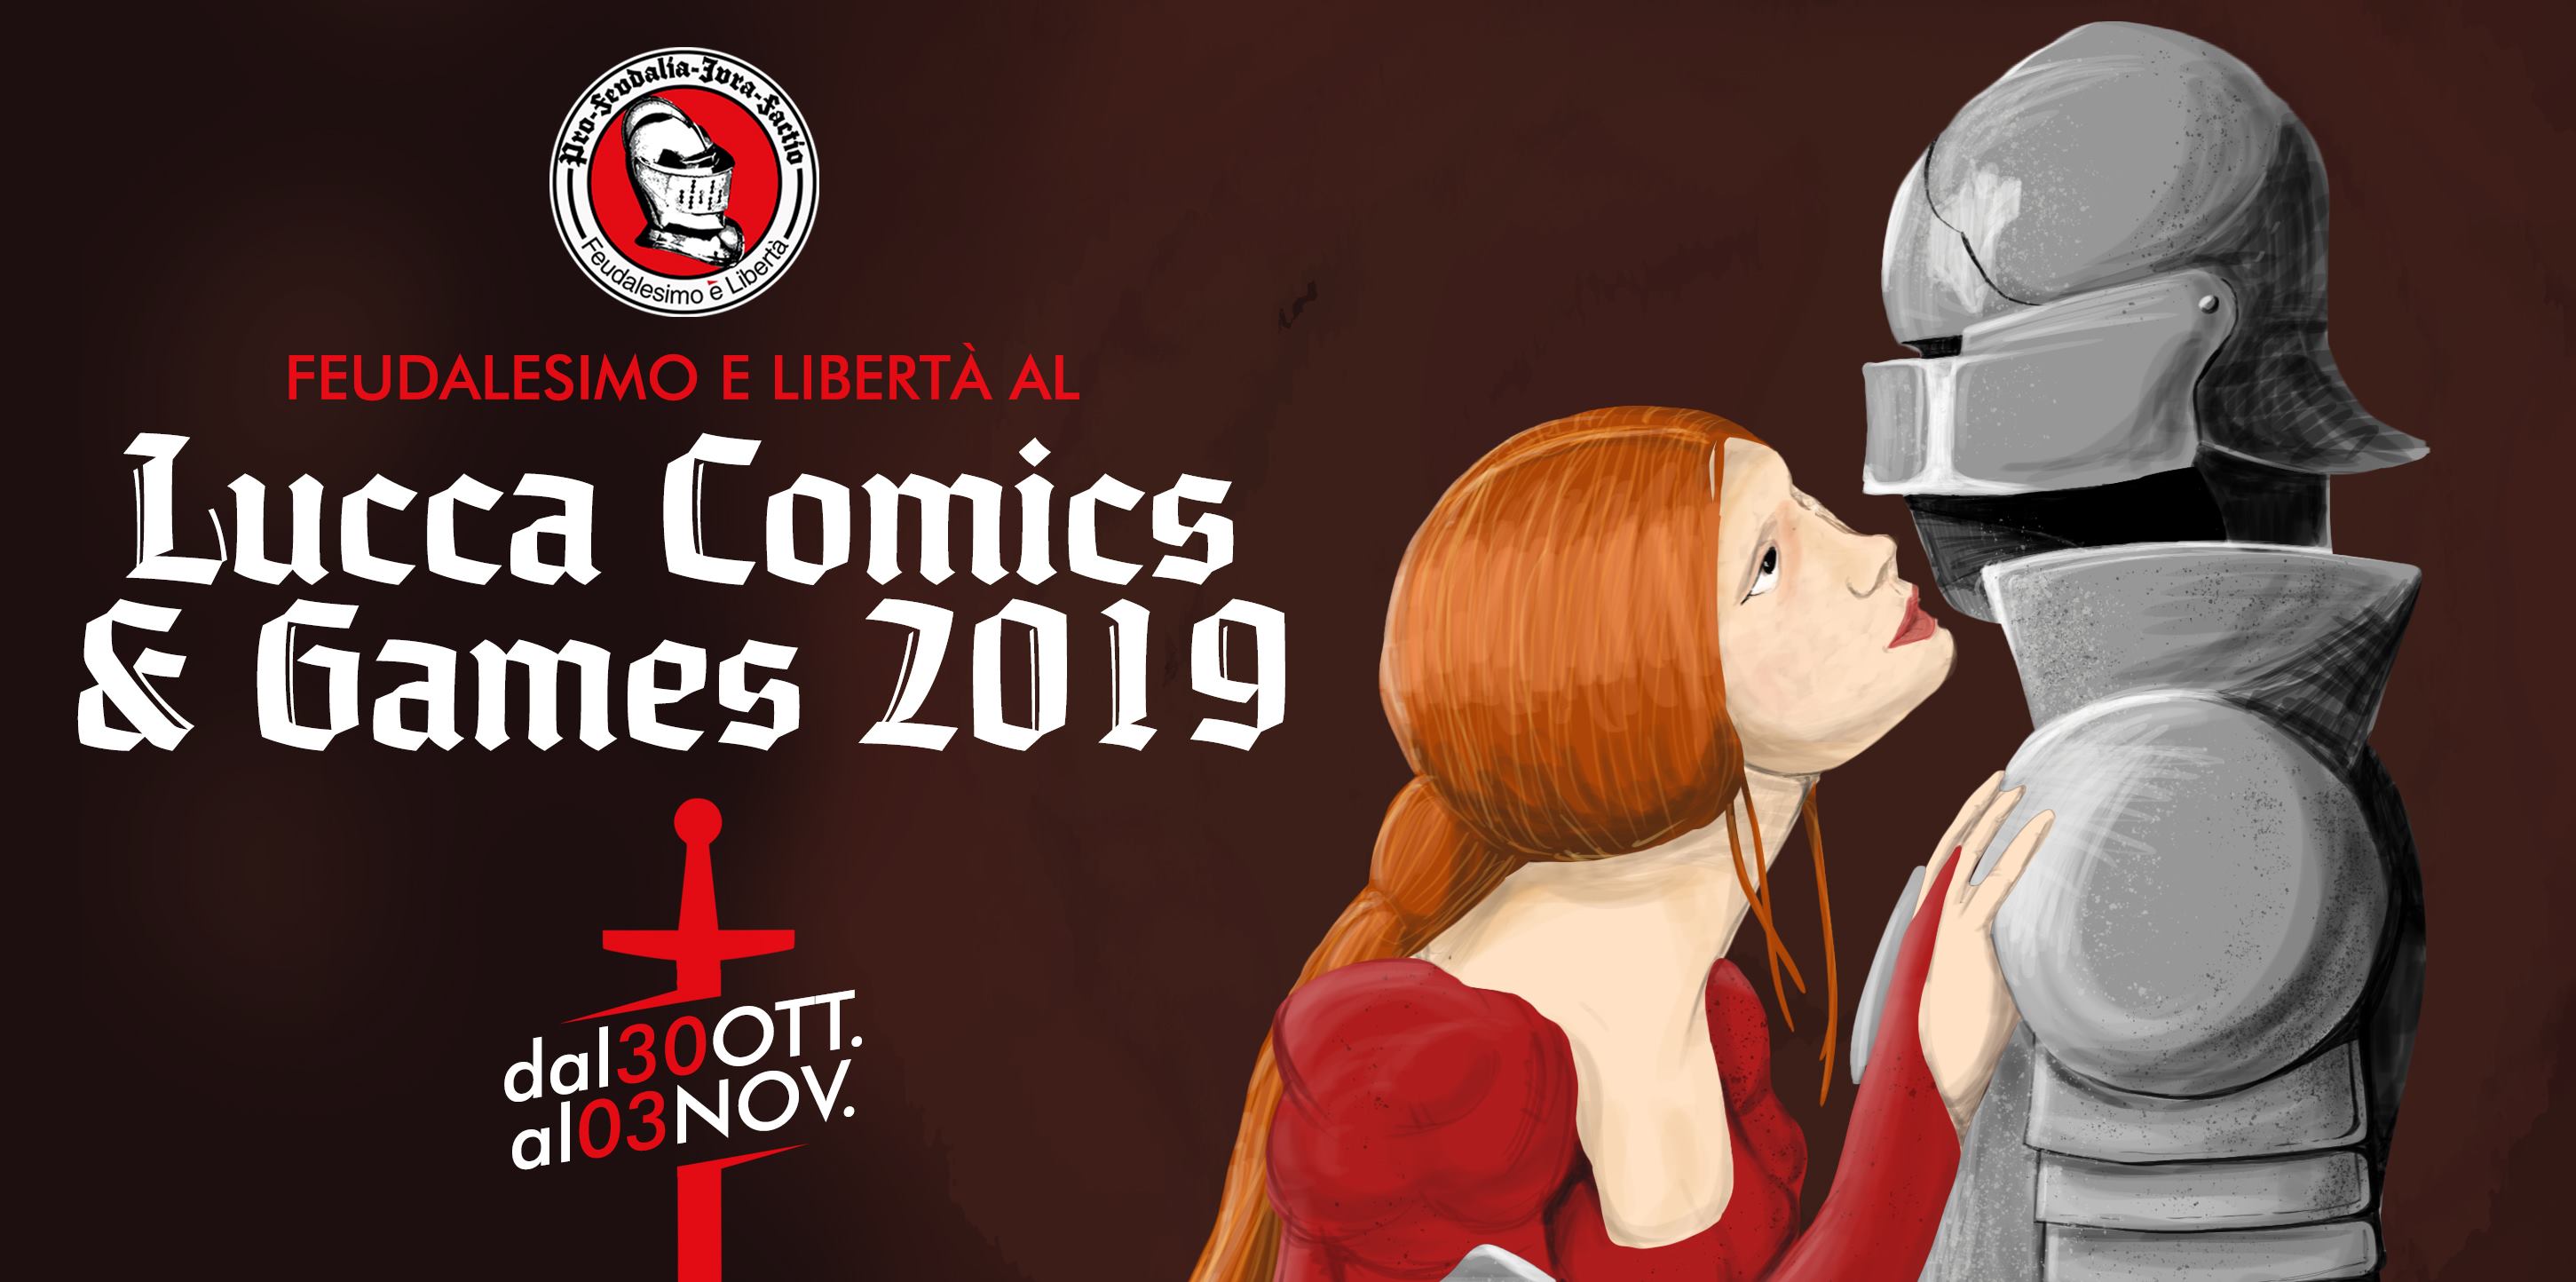 🎯 Le Contrade ospiti di Feudalesimo e Libertà a Lucca Comics & Games 2019